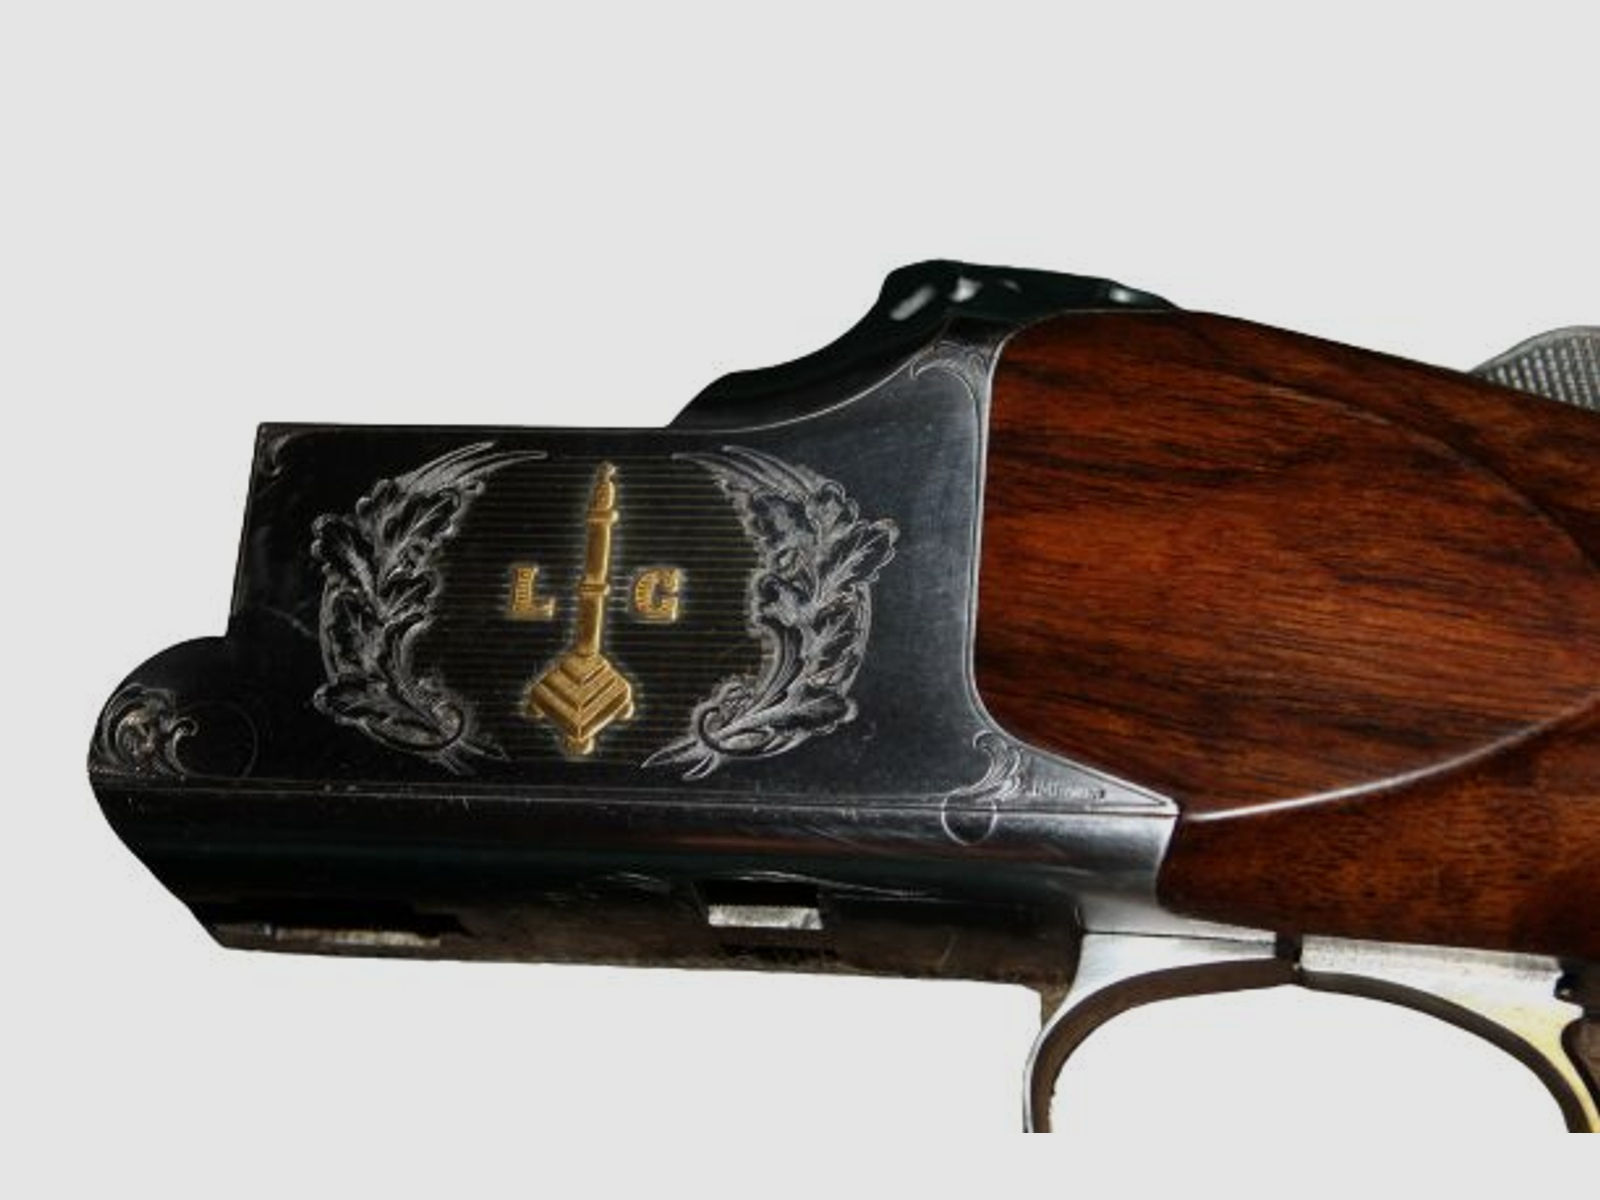 FN Browning	 Modell 13 Jagd